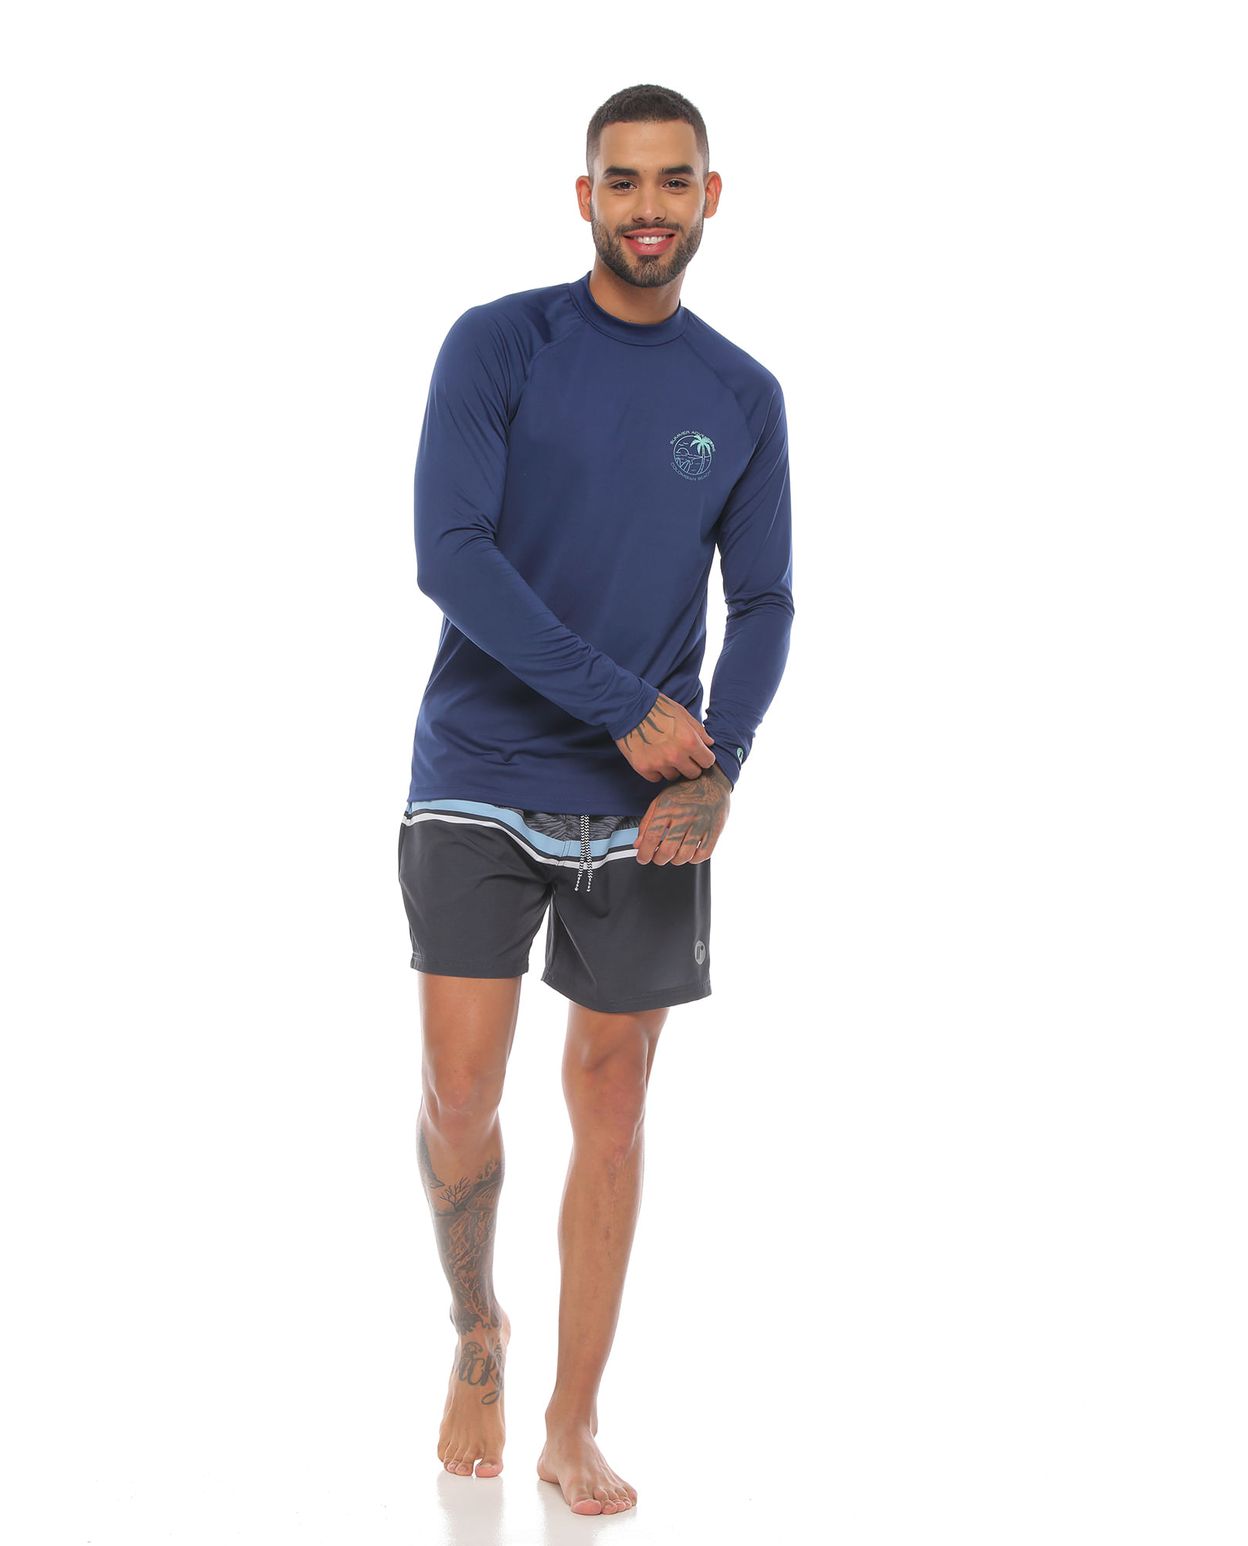 modelo con camibuso proteccion uv color azul oscuro y pantaloneta de playa color gris para hombre cuerpo completo